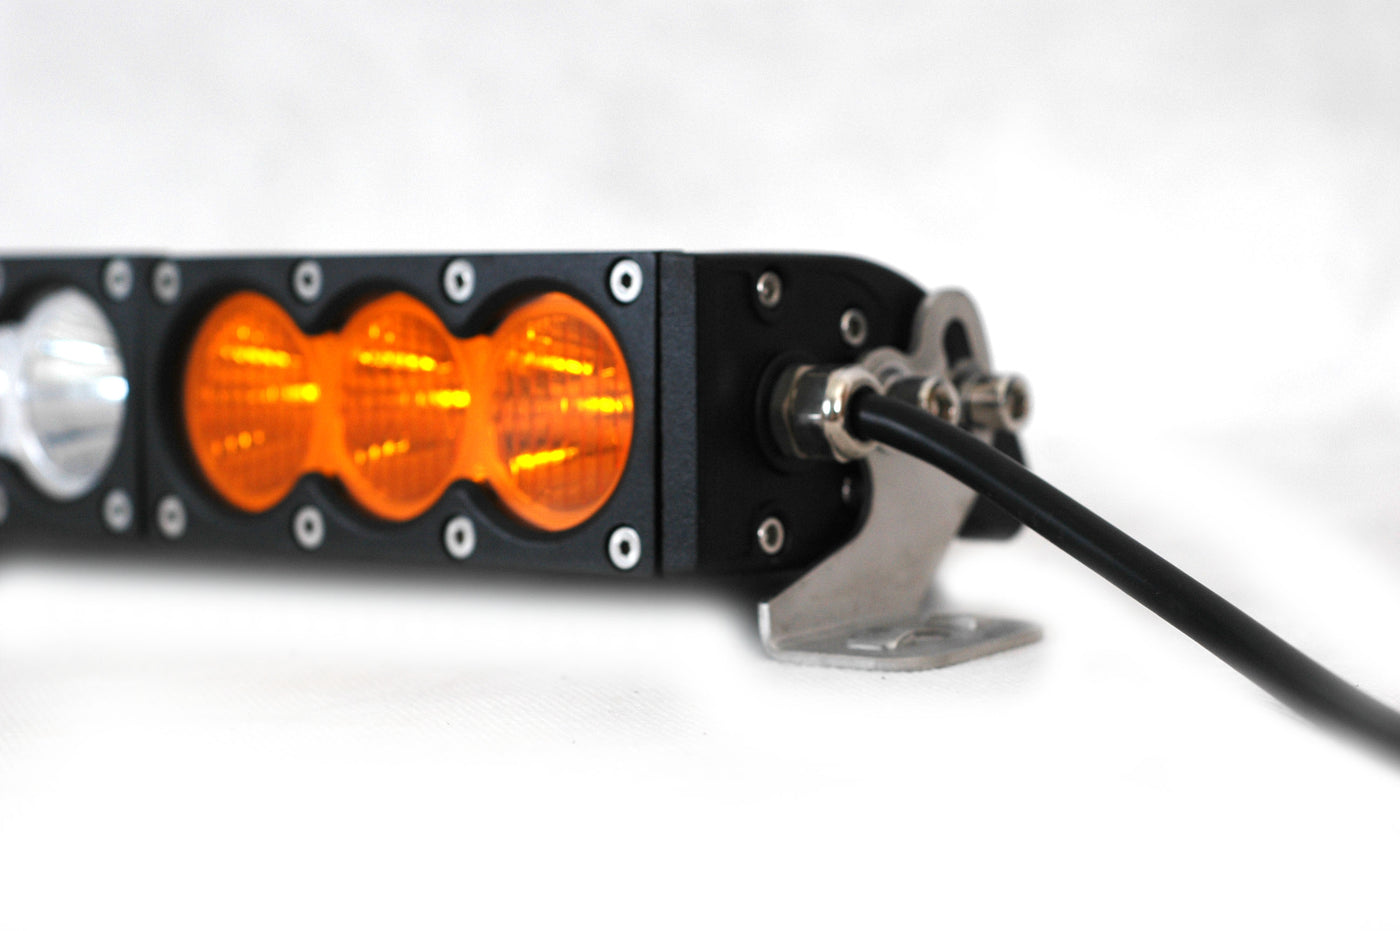 38.4" CREE LED Triple Laser Light Bar - OZI4X4 PTY LTD